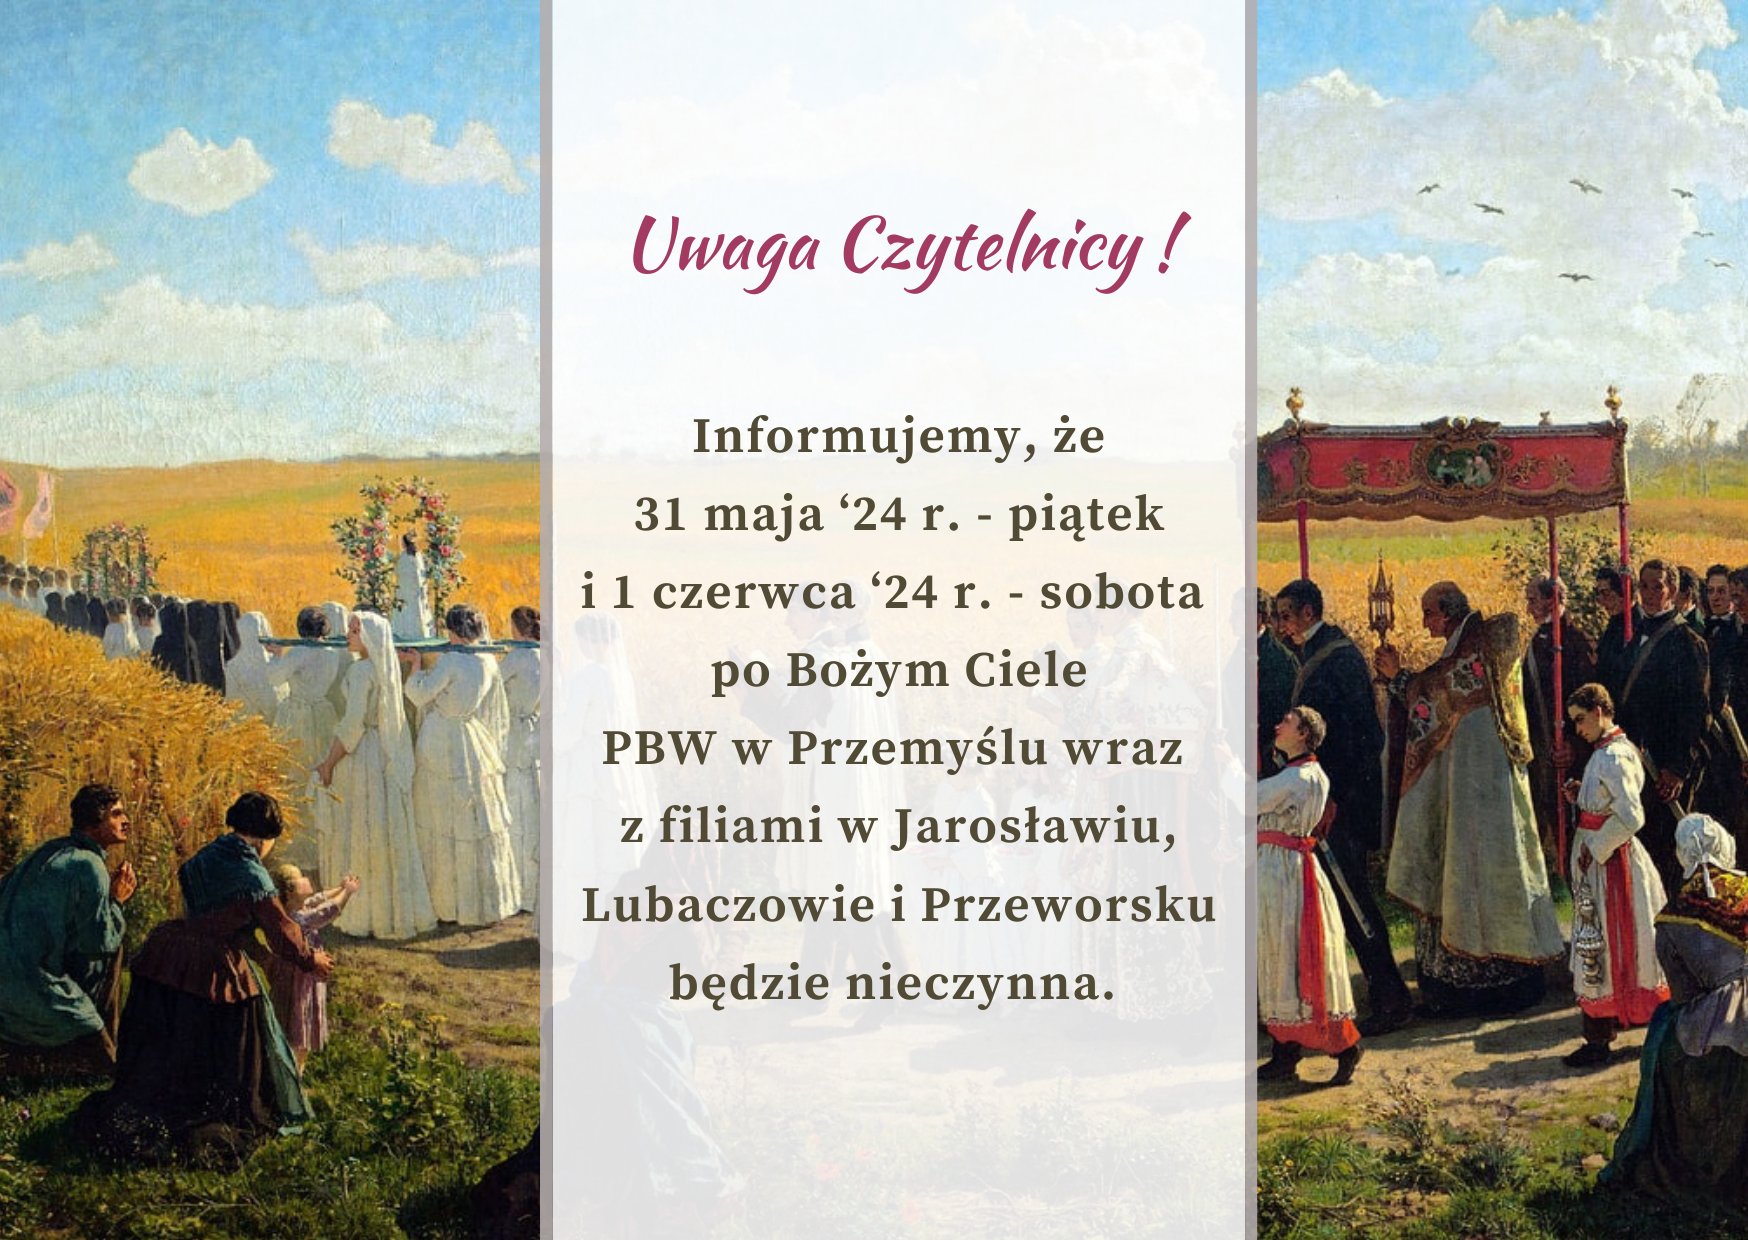 Informujemy, że 31 maja ‘24 r. - piątek  oraz 1 czerwca ‘24 r. - sobota po Bożym Ciele PBW w Przemyślu wraz z filiami  w Jarosławiu, Lubaczowie i Przeworsku  będzie nieczynna. 